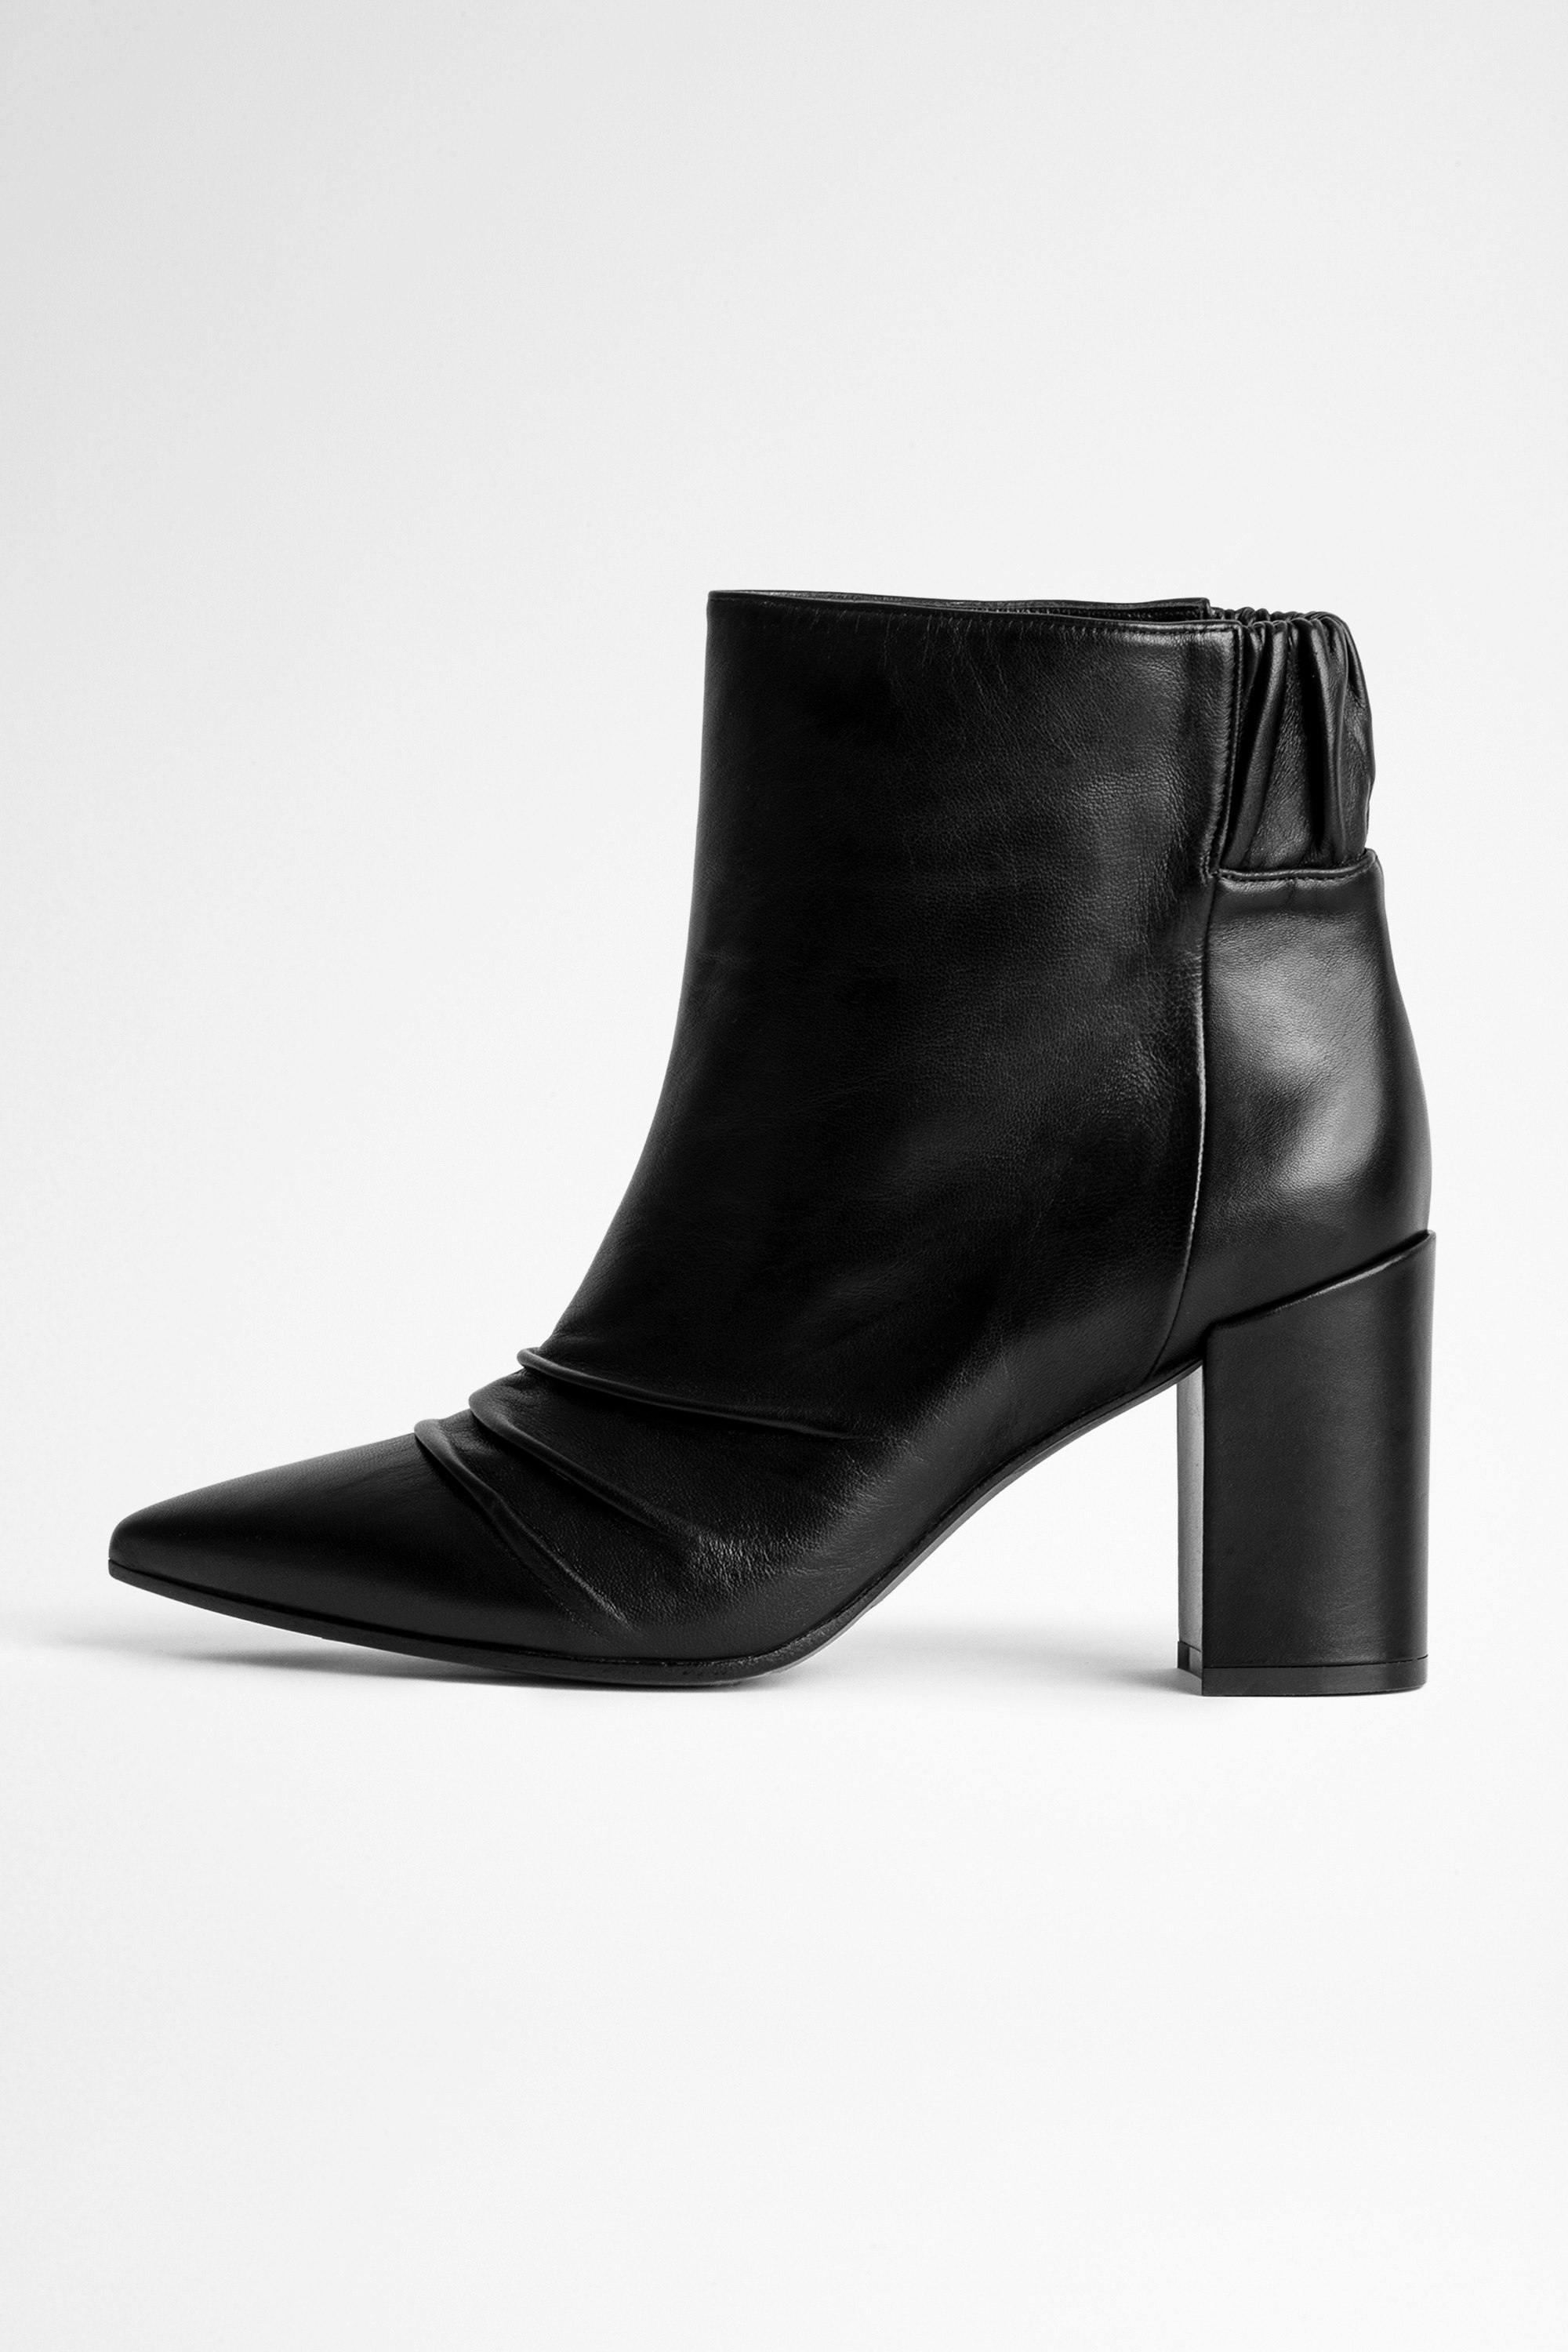 Women's Boots Styles | Zadig\u0026Voltaire